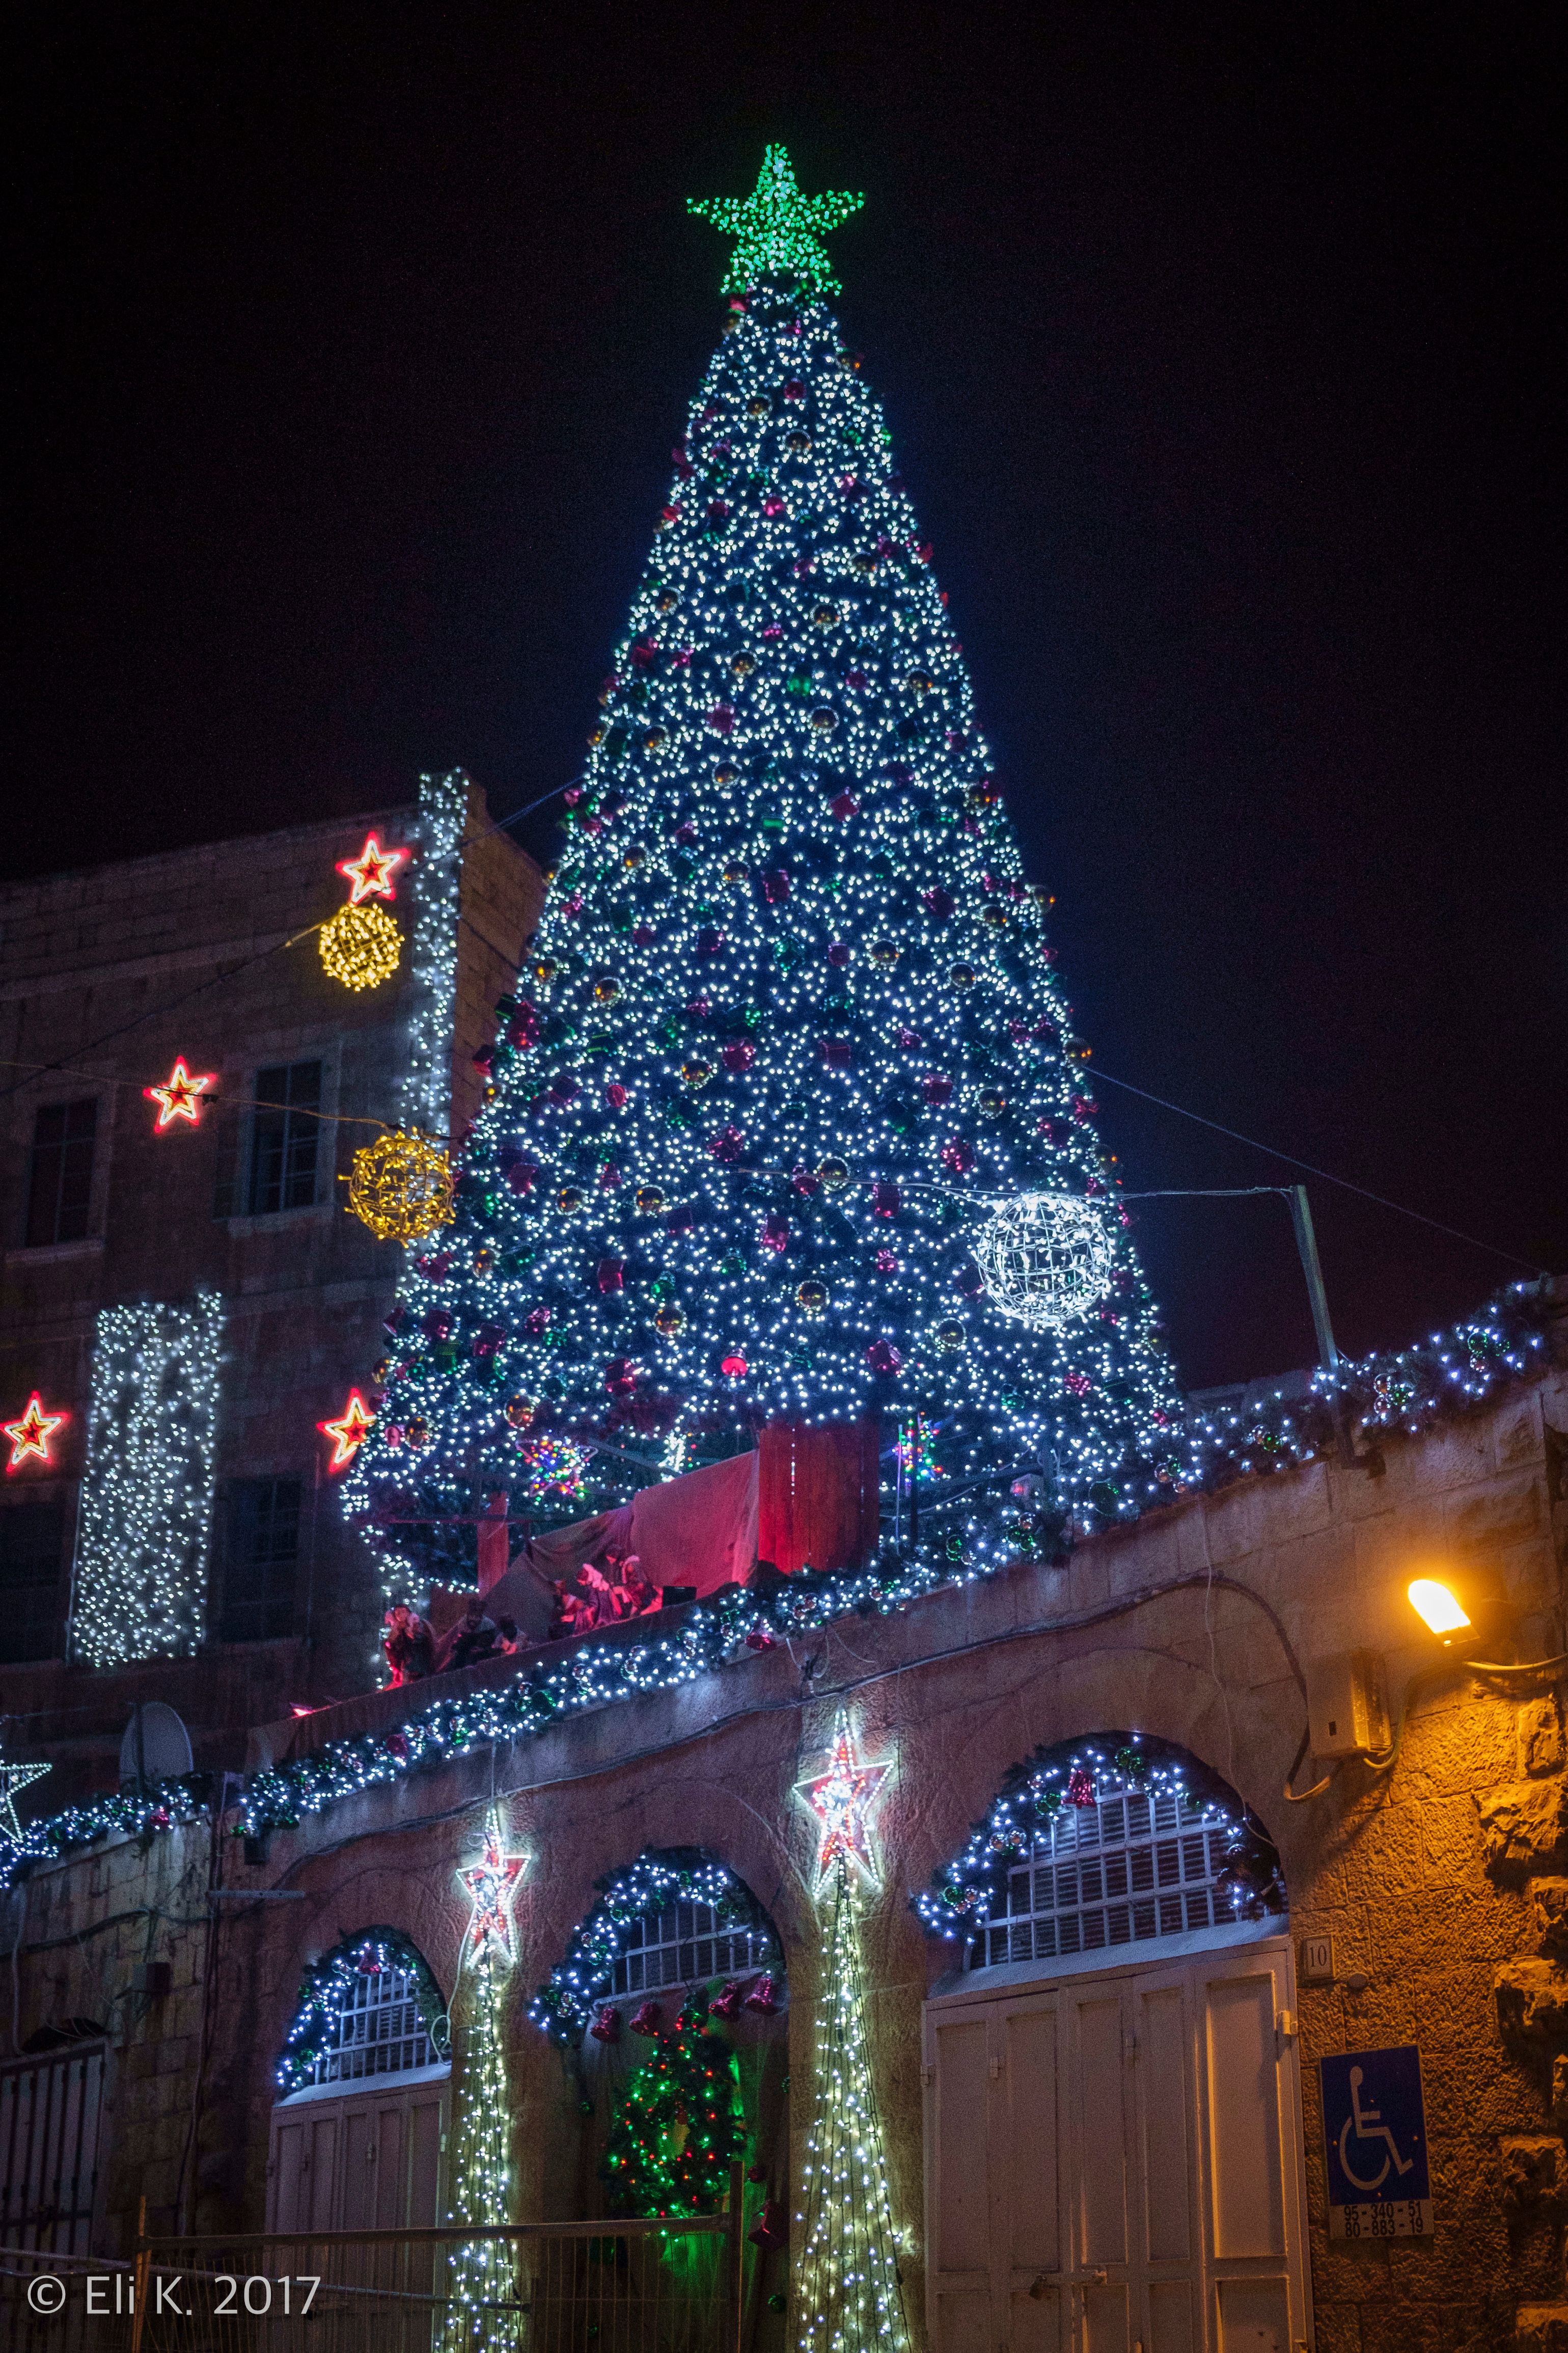 صورة عيد الميلاد(غربي) في القدس